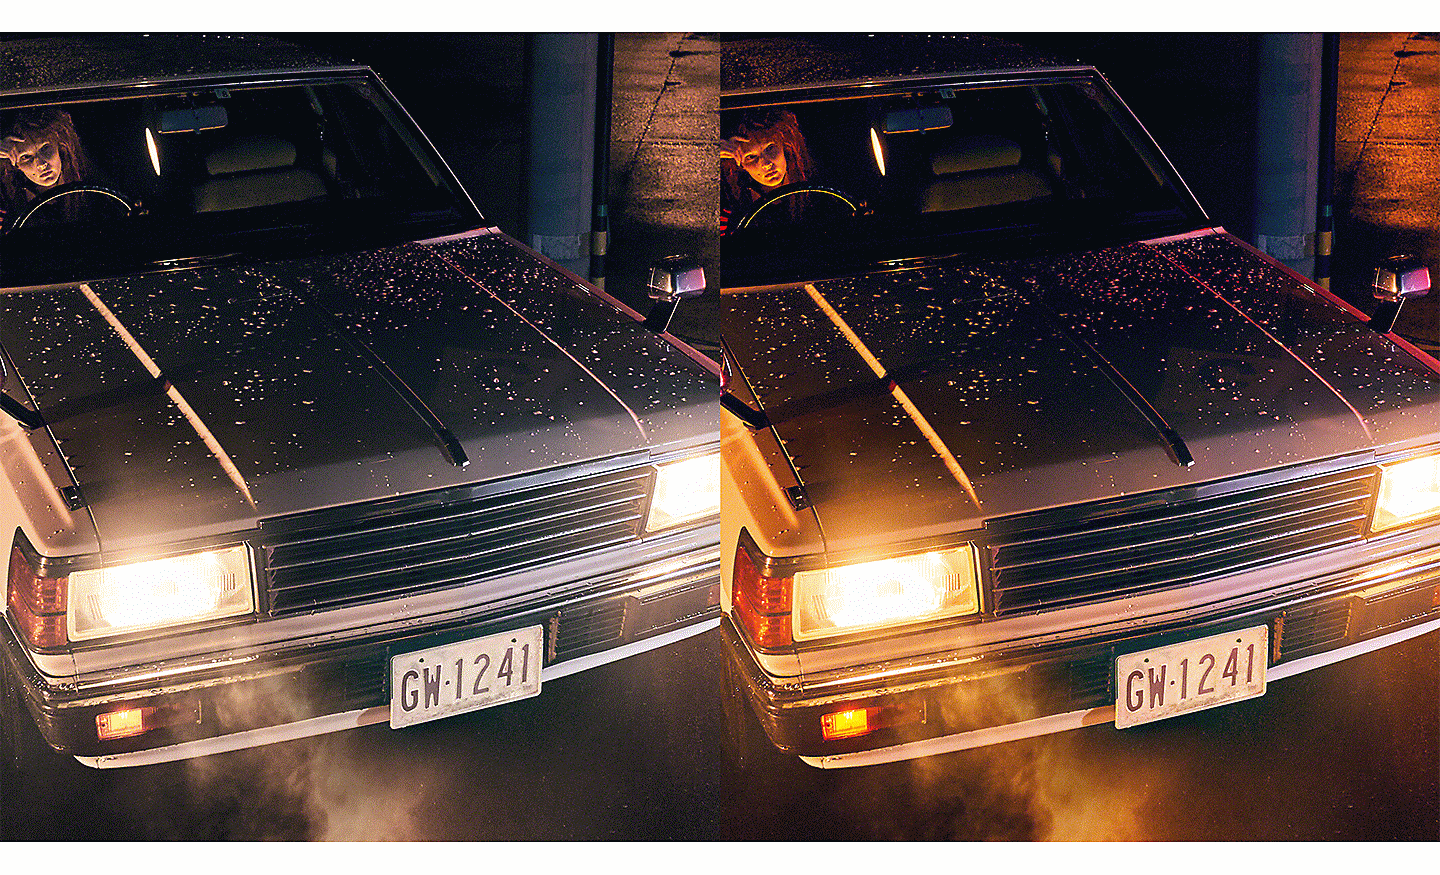 Hai hình ảnh chụp một chiếc ô tô đang bật đèn pha, một hình có hiệu ứng chuyển tông màu mượt mà hơn hình kia.